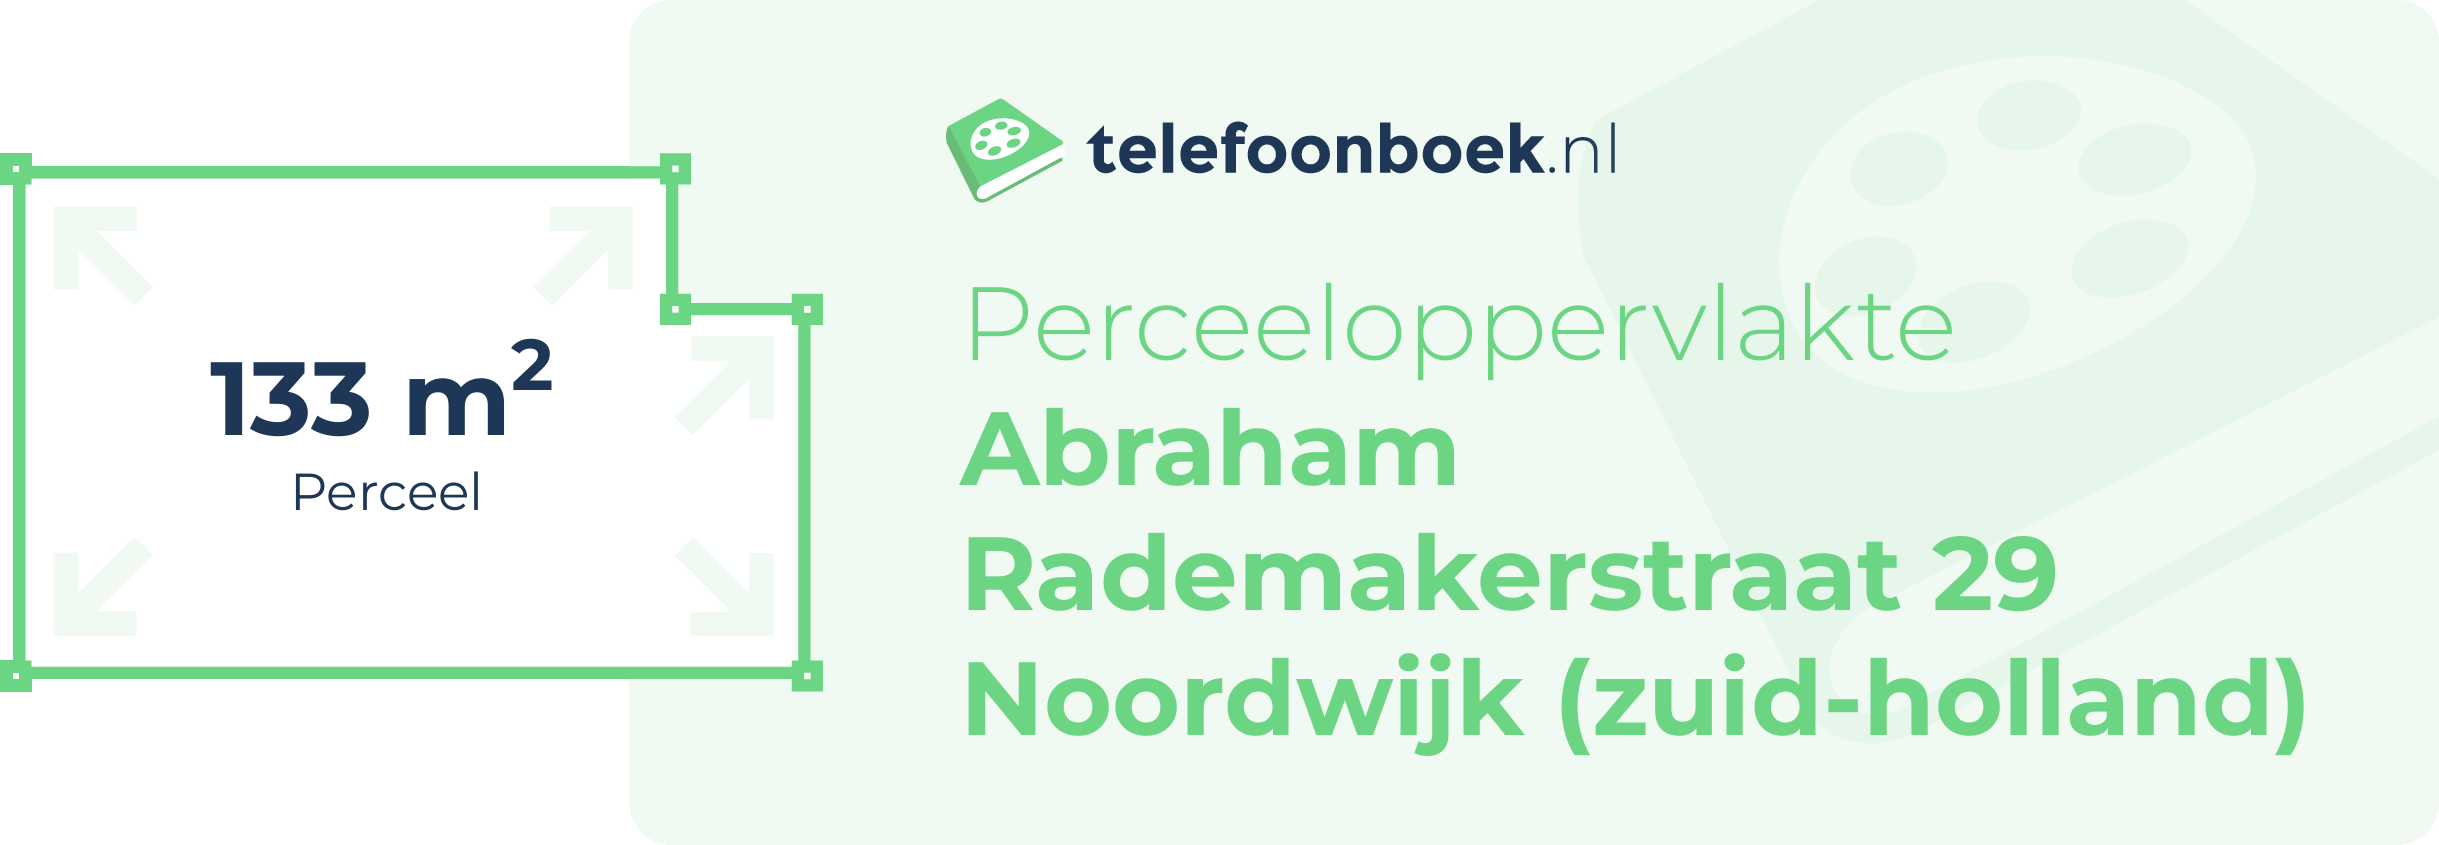 Perceeloppervlakte Abraham Rademakerstraat 29 Noordwijk (Zuid-Holland)